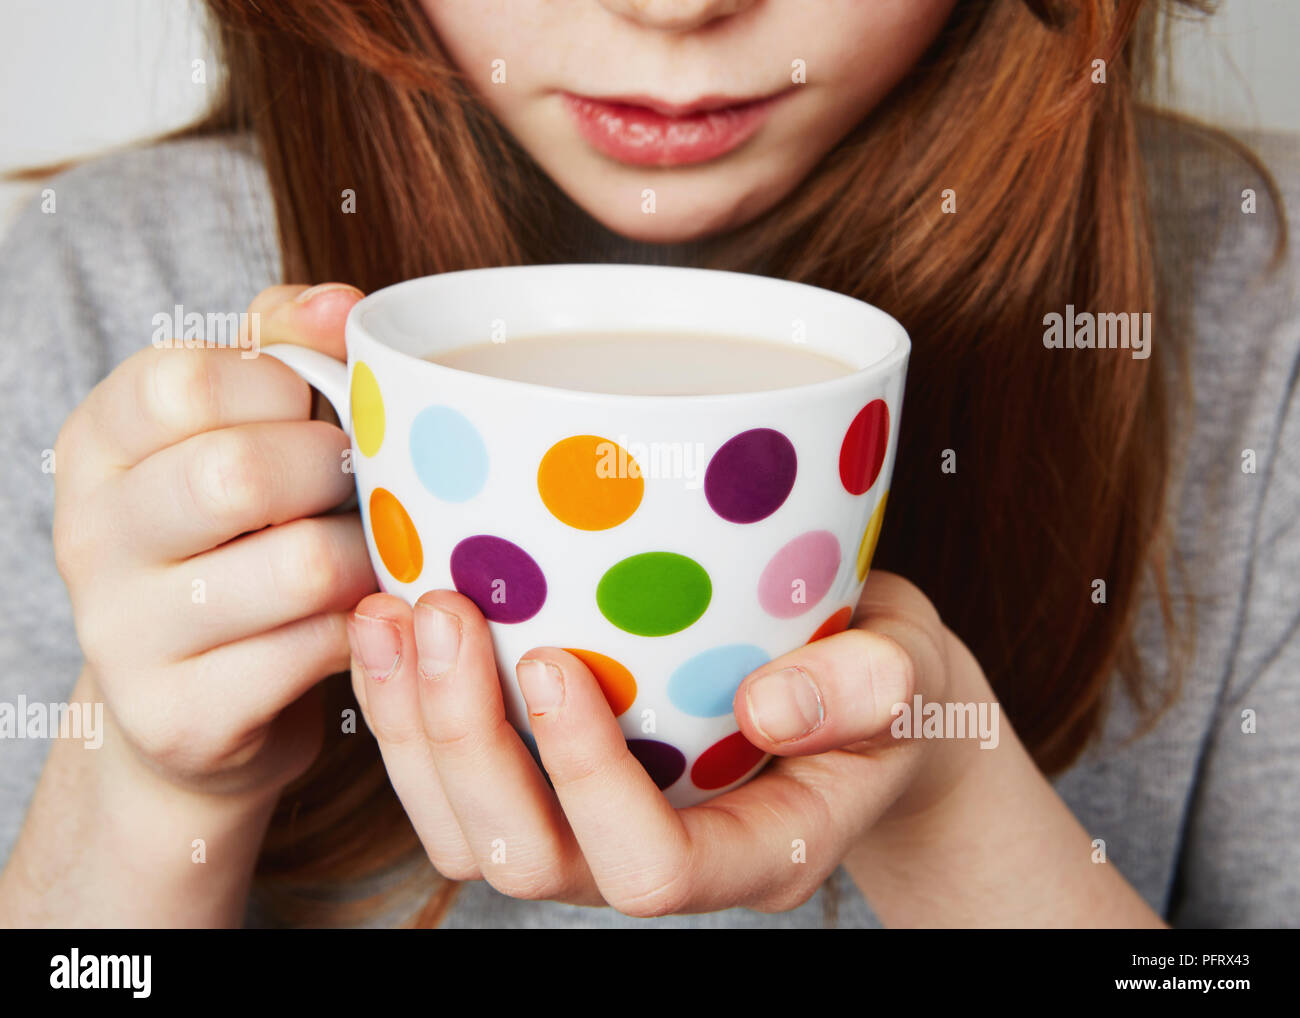 Enfant de boire une boisson chaude à partir d'un mug restreint Banque D'Images